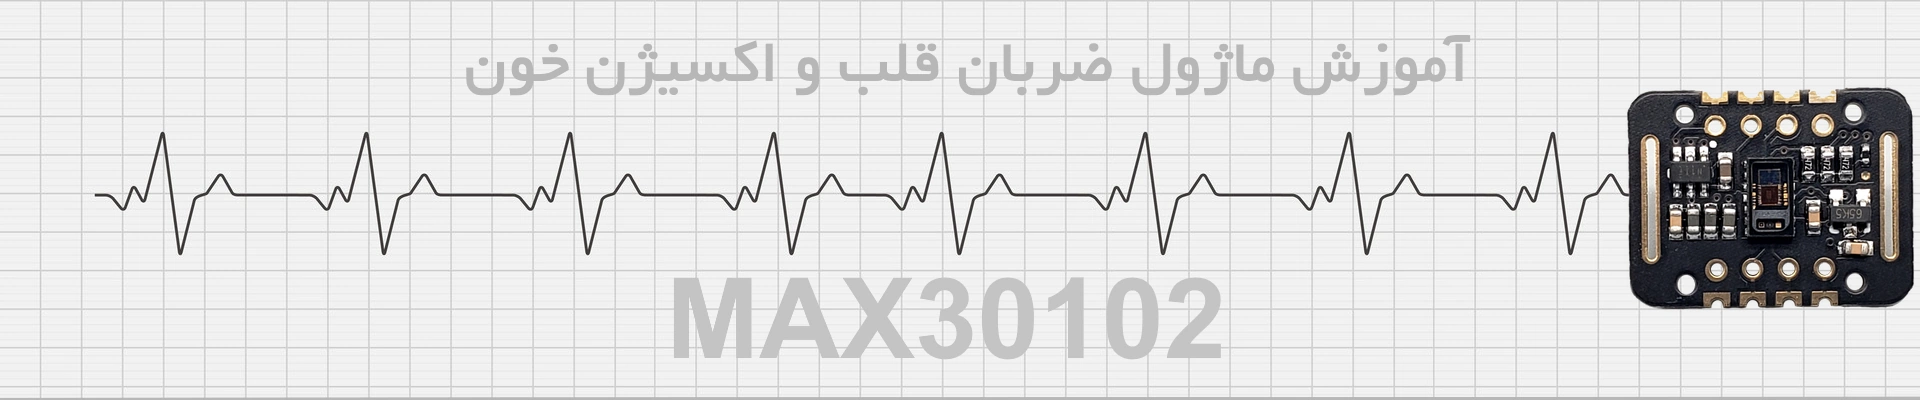 آموزش ماژول ضربان قلب و اکسیژن خون MAX30102